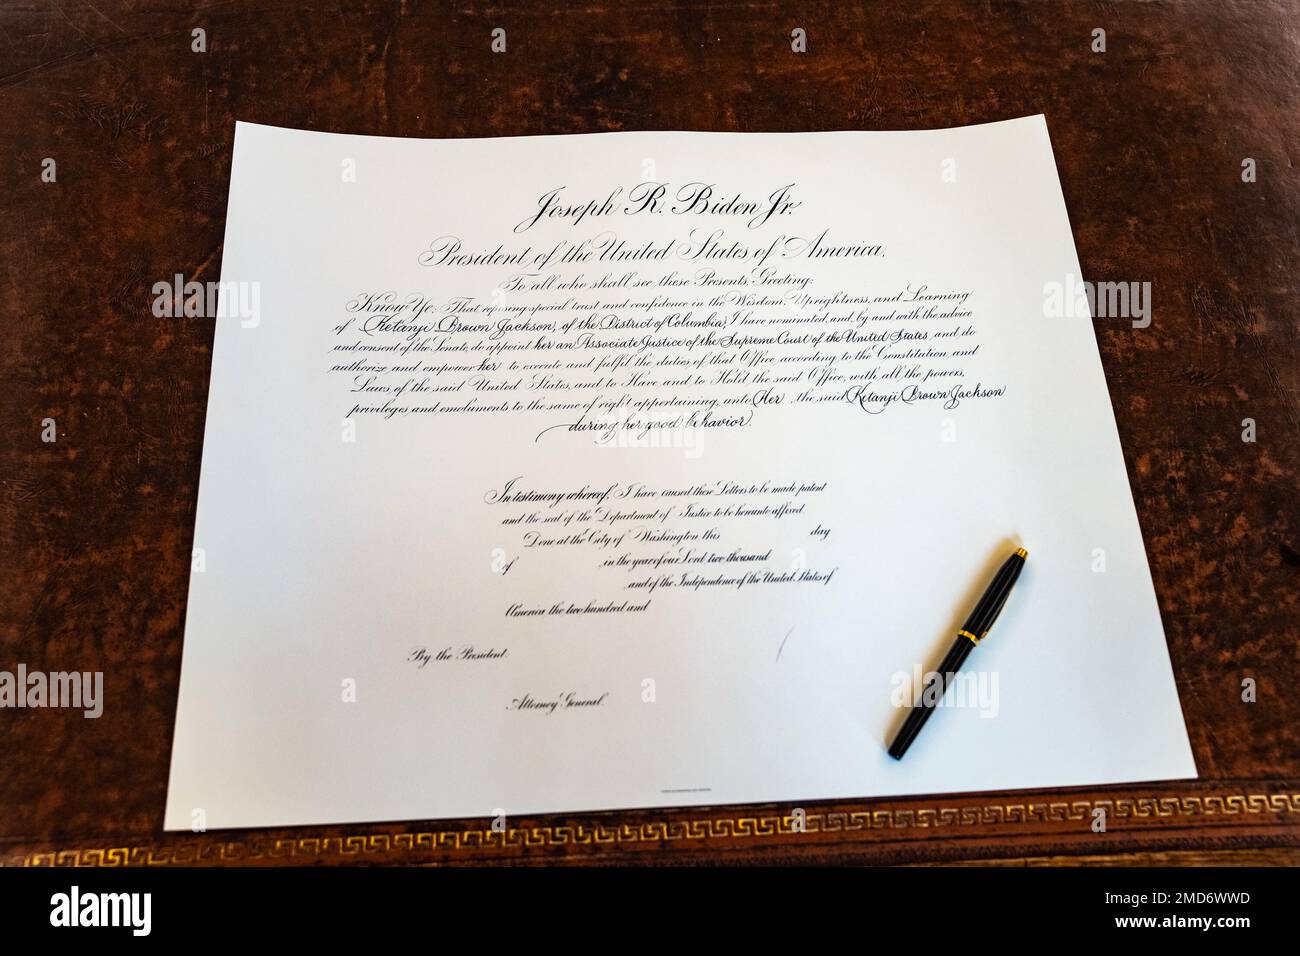 Reportage: La commissione per la Giustizia della Corte Suprema Ketanji Brown Jackson attende la firma del Presidente Joe Biden, venerdì 8 aprile 2022 Foto Stock